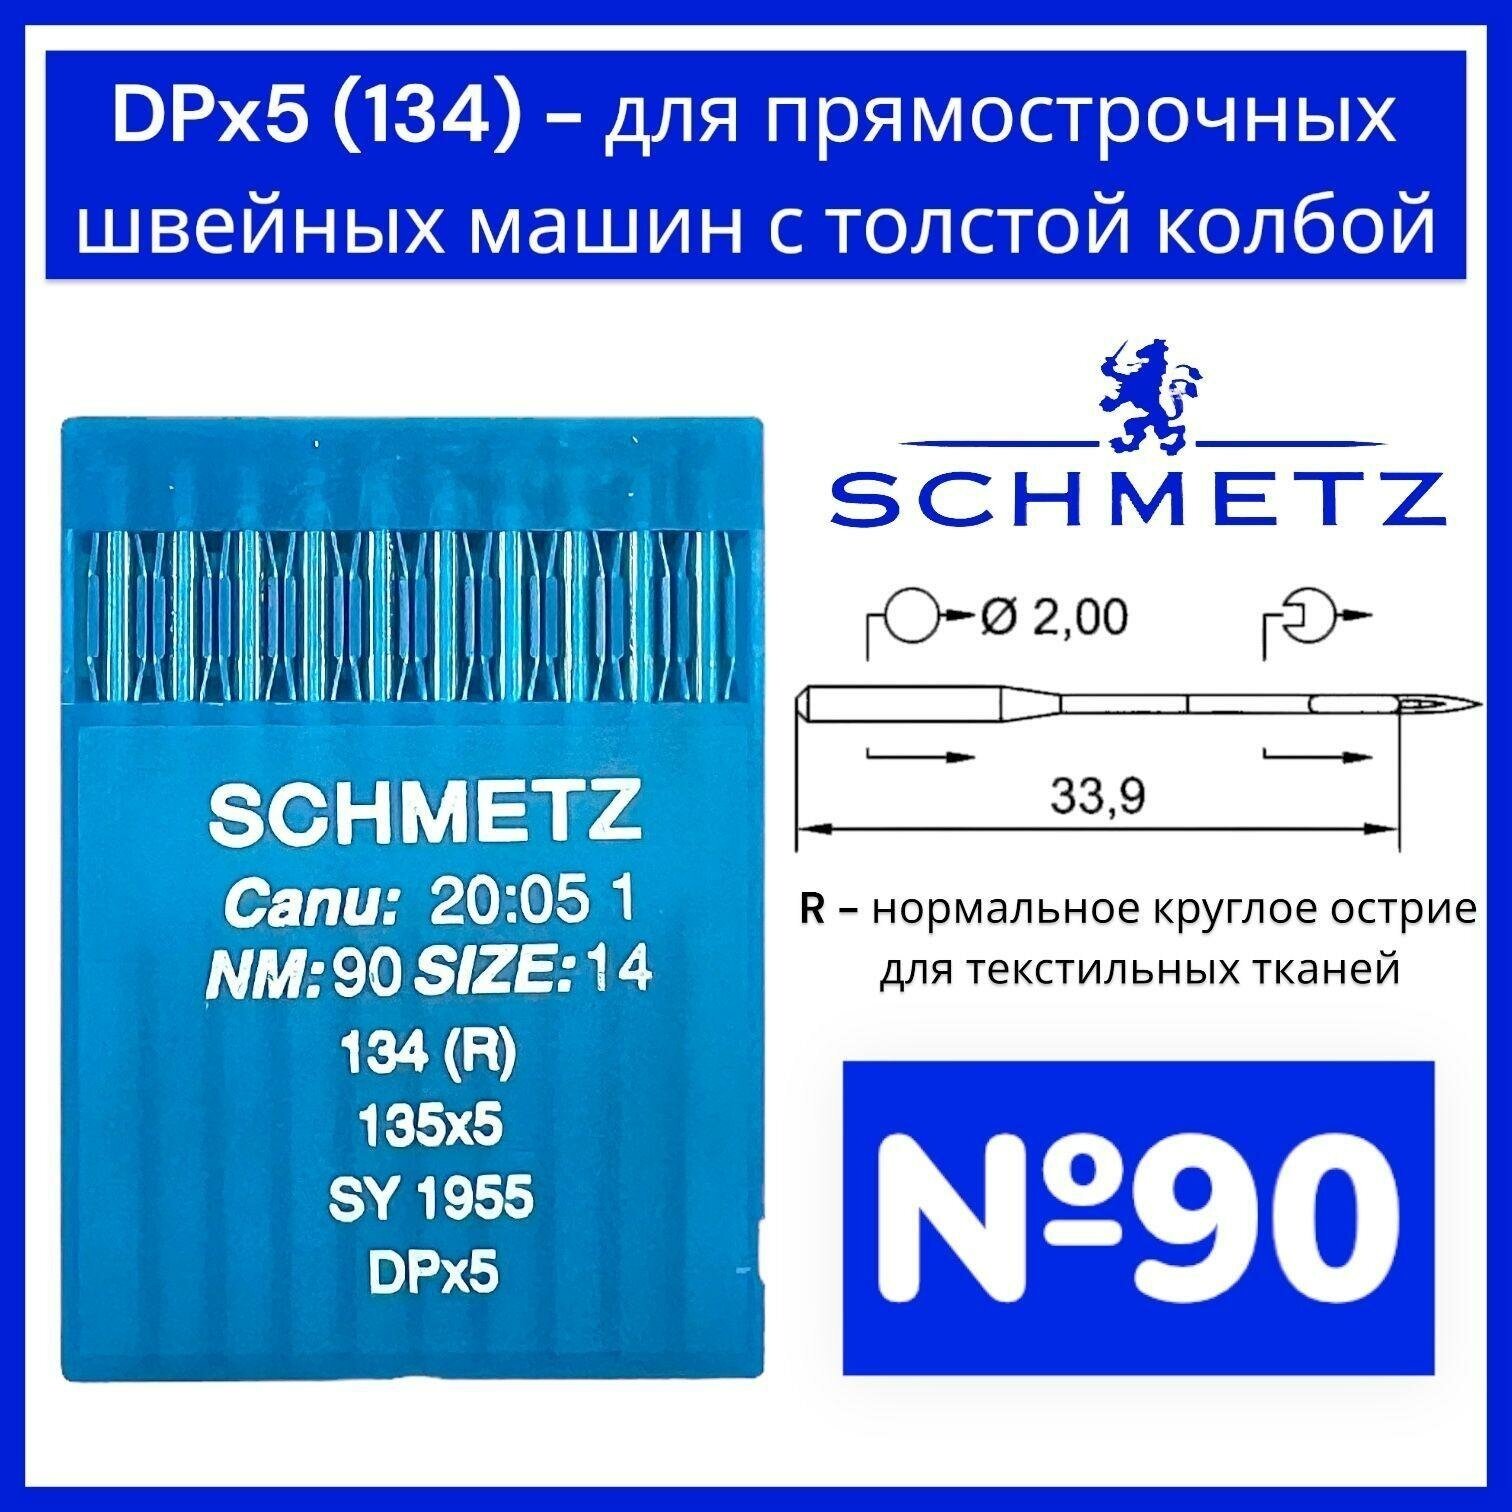 Иглы DPx5 (134) R №90/ Schmetz для промышленных швейных машин/ толстая колба - фотография № 1